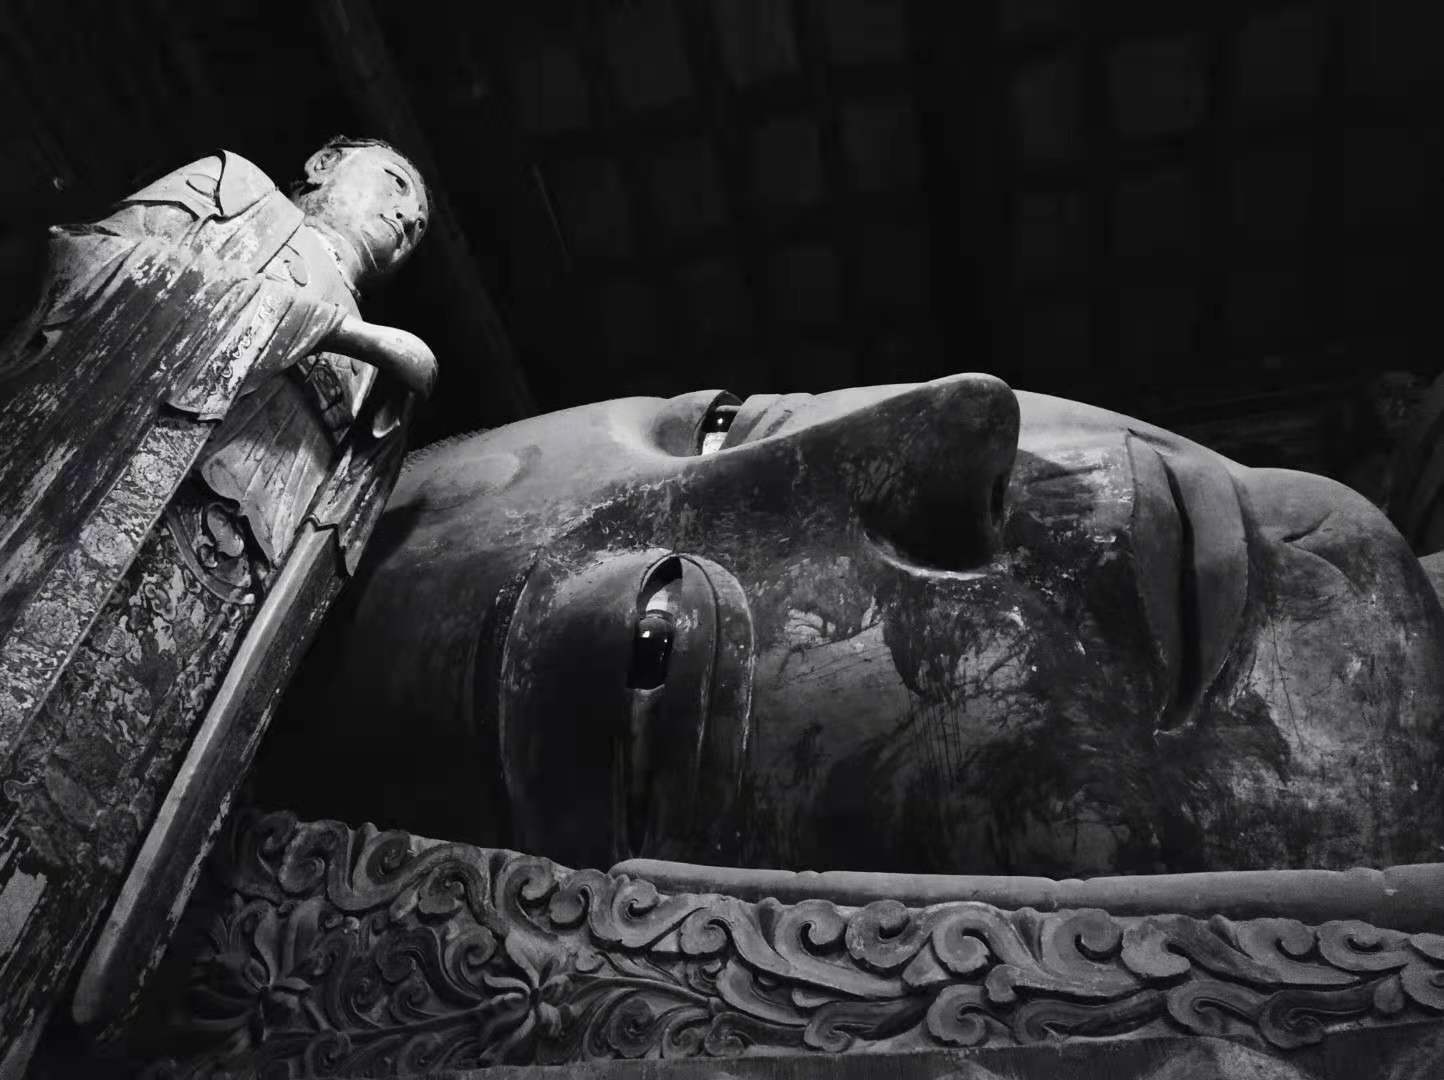 张掖大佛寺内有世界上最大的木架构泥塑卧佛。本文图片均由作者拍摄